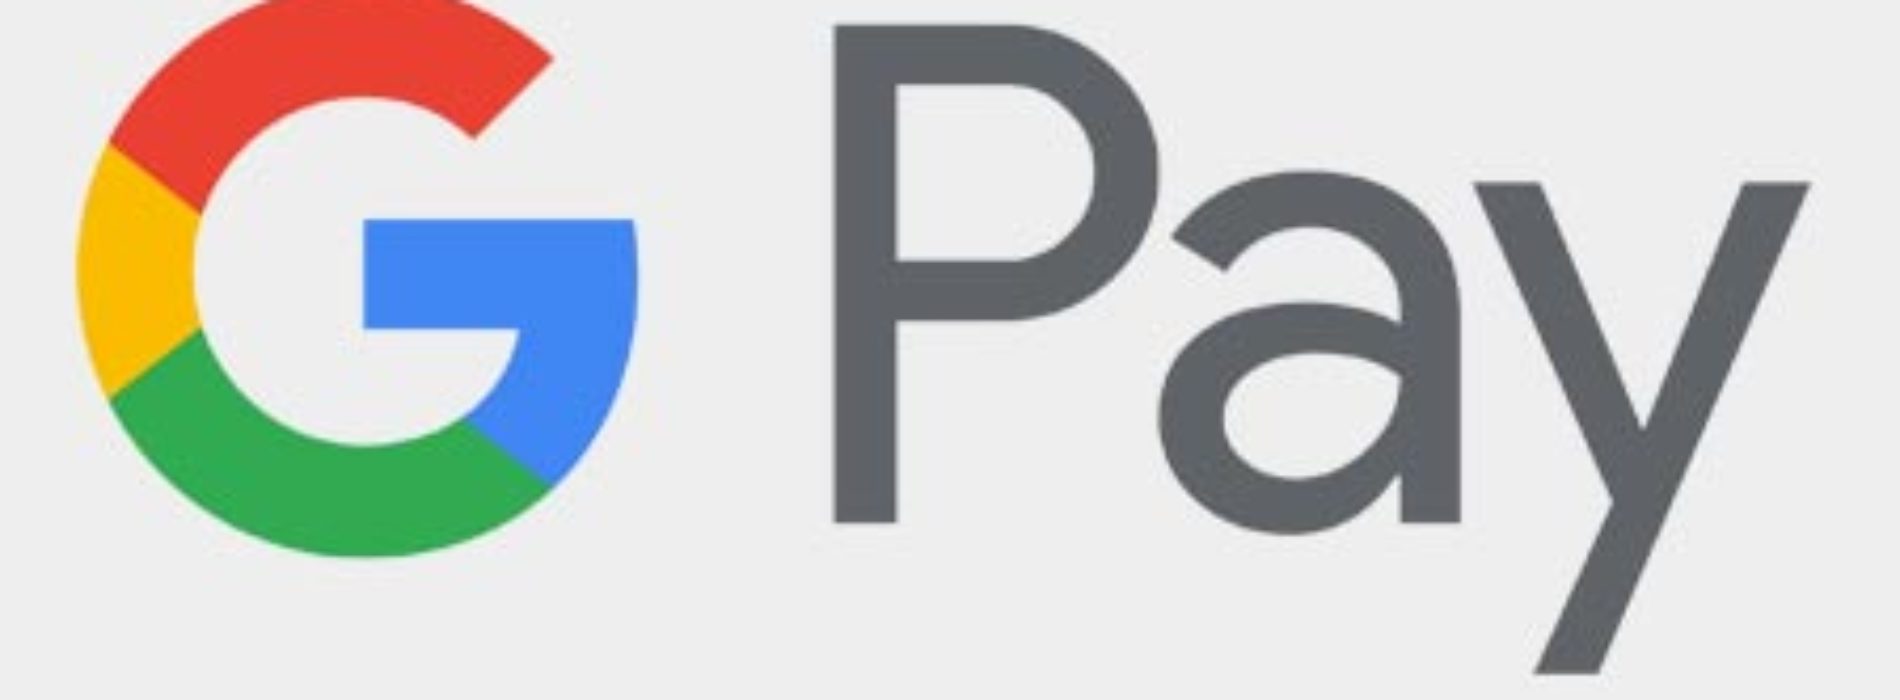 Płatności mobilne Google Pay już w 13 bankach